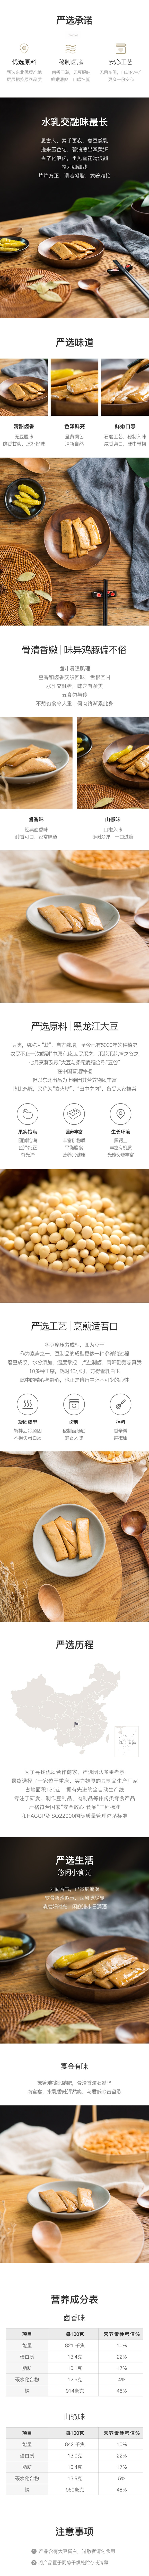 【中国直邮】网易严选 手磨豆干 268克 (山椒味) 豆腐干卤味素肉小吃  